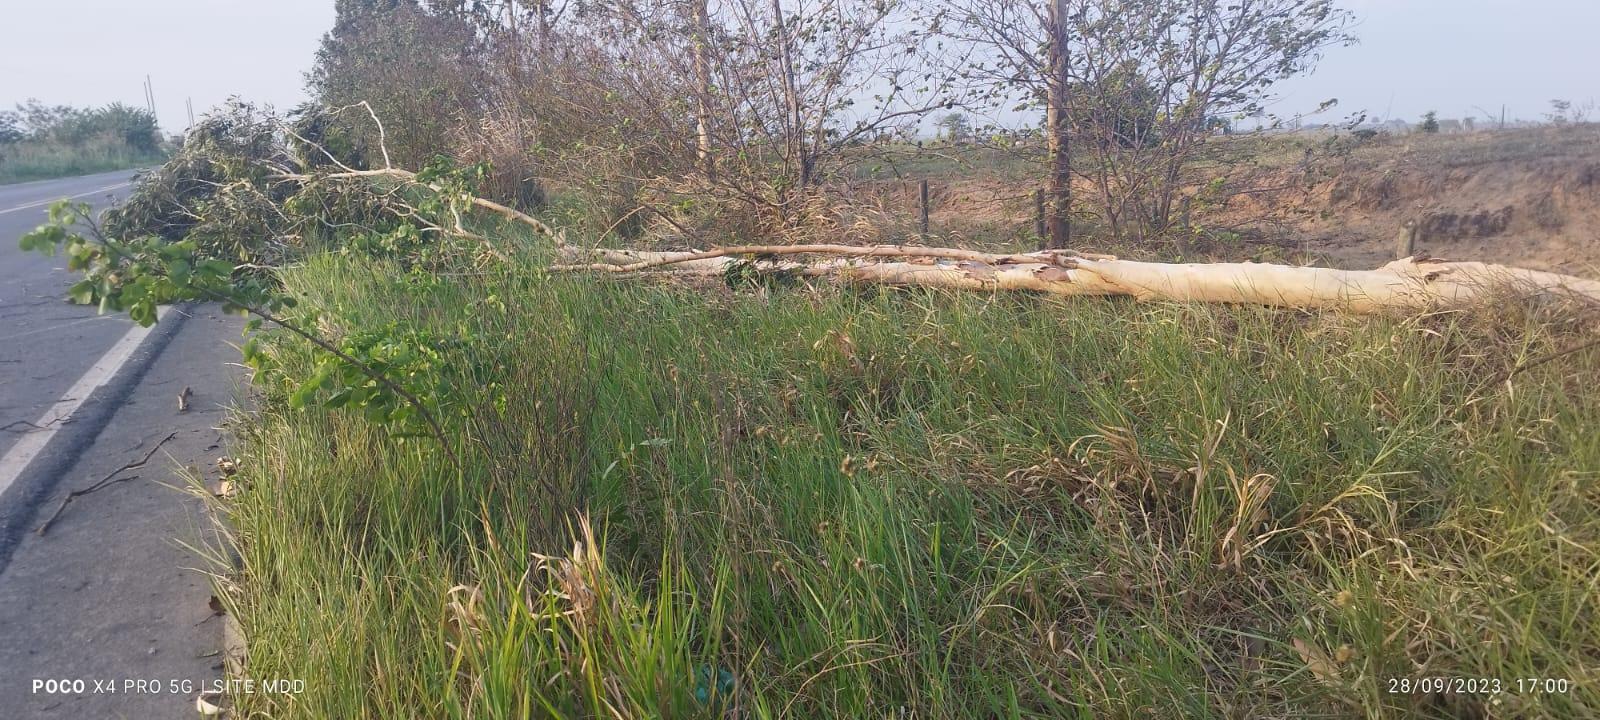 Queda de árvore provoca acidente na BA-290, próximo a Medeiros Neto